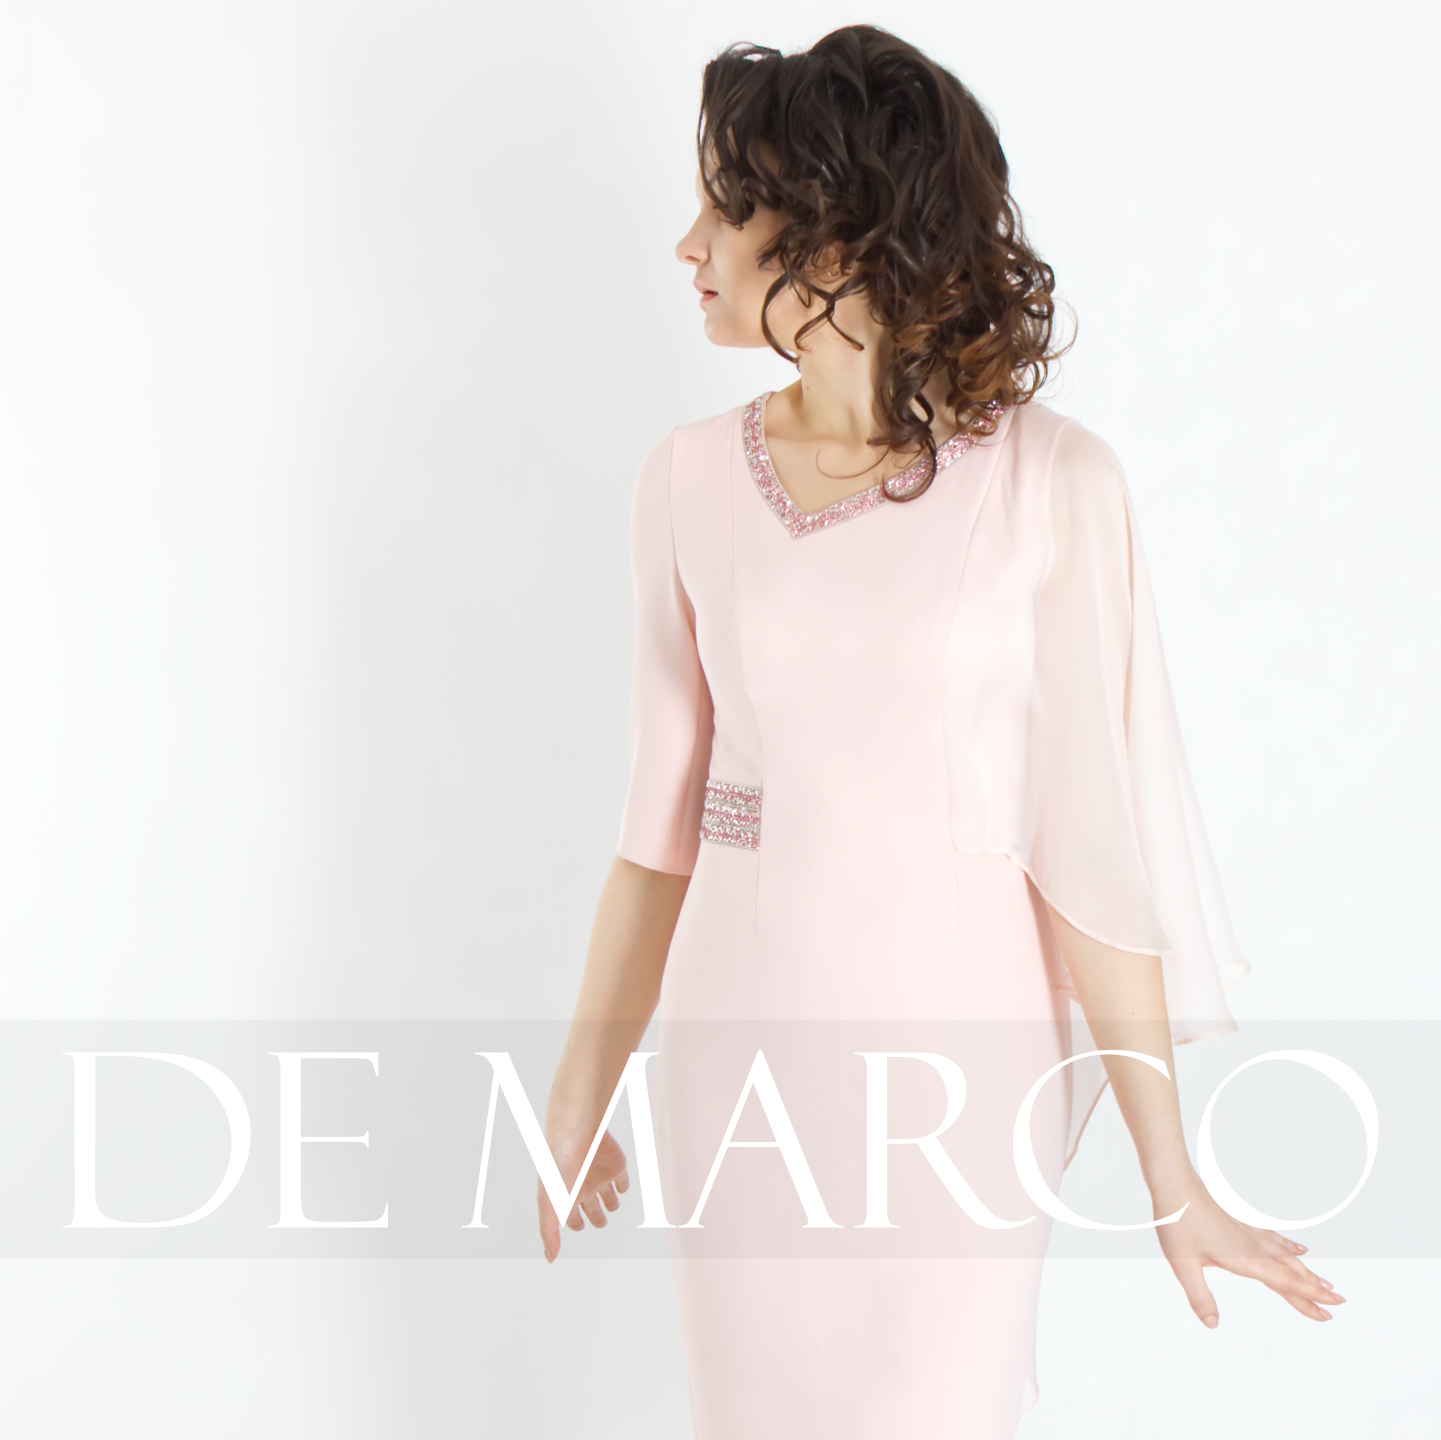 Gdzie kupić elegancką sukienkę dobrej jakości? Polskie sukienki De Marco